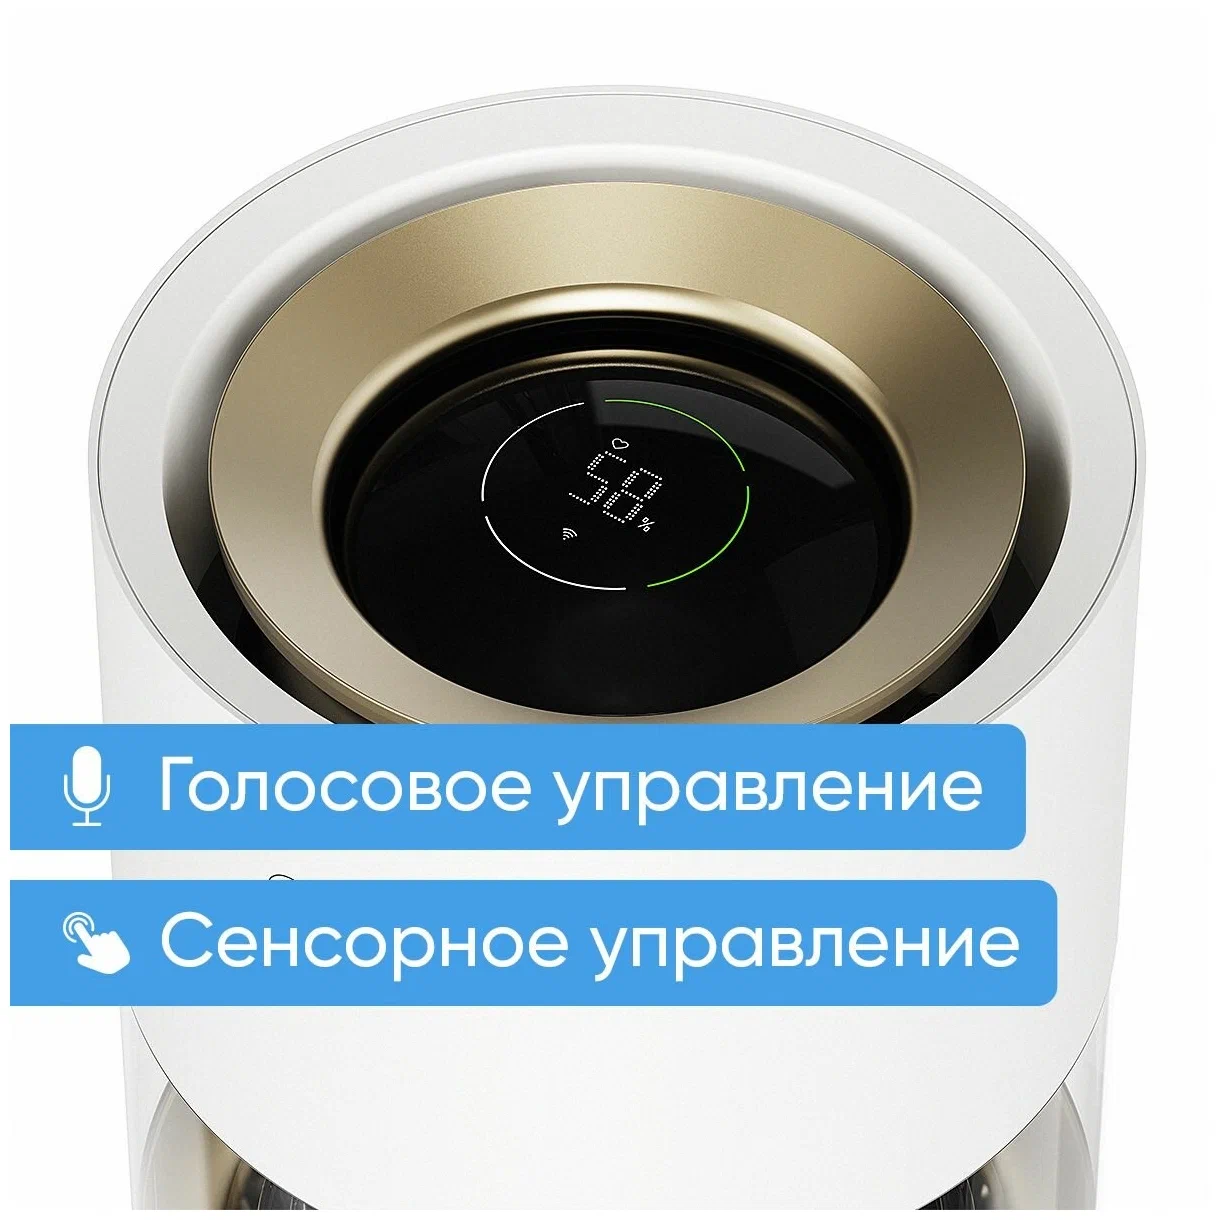 Увлажнитель воздуха Smartmi Humidifier Rainforest (CJJSQ06ZM) в Челябинске купить по недорогим ценам с доставкой